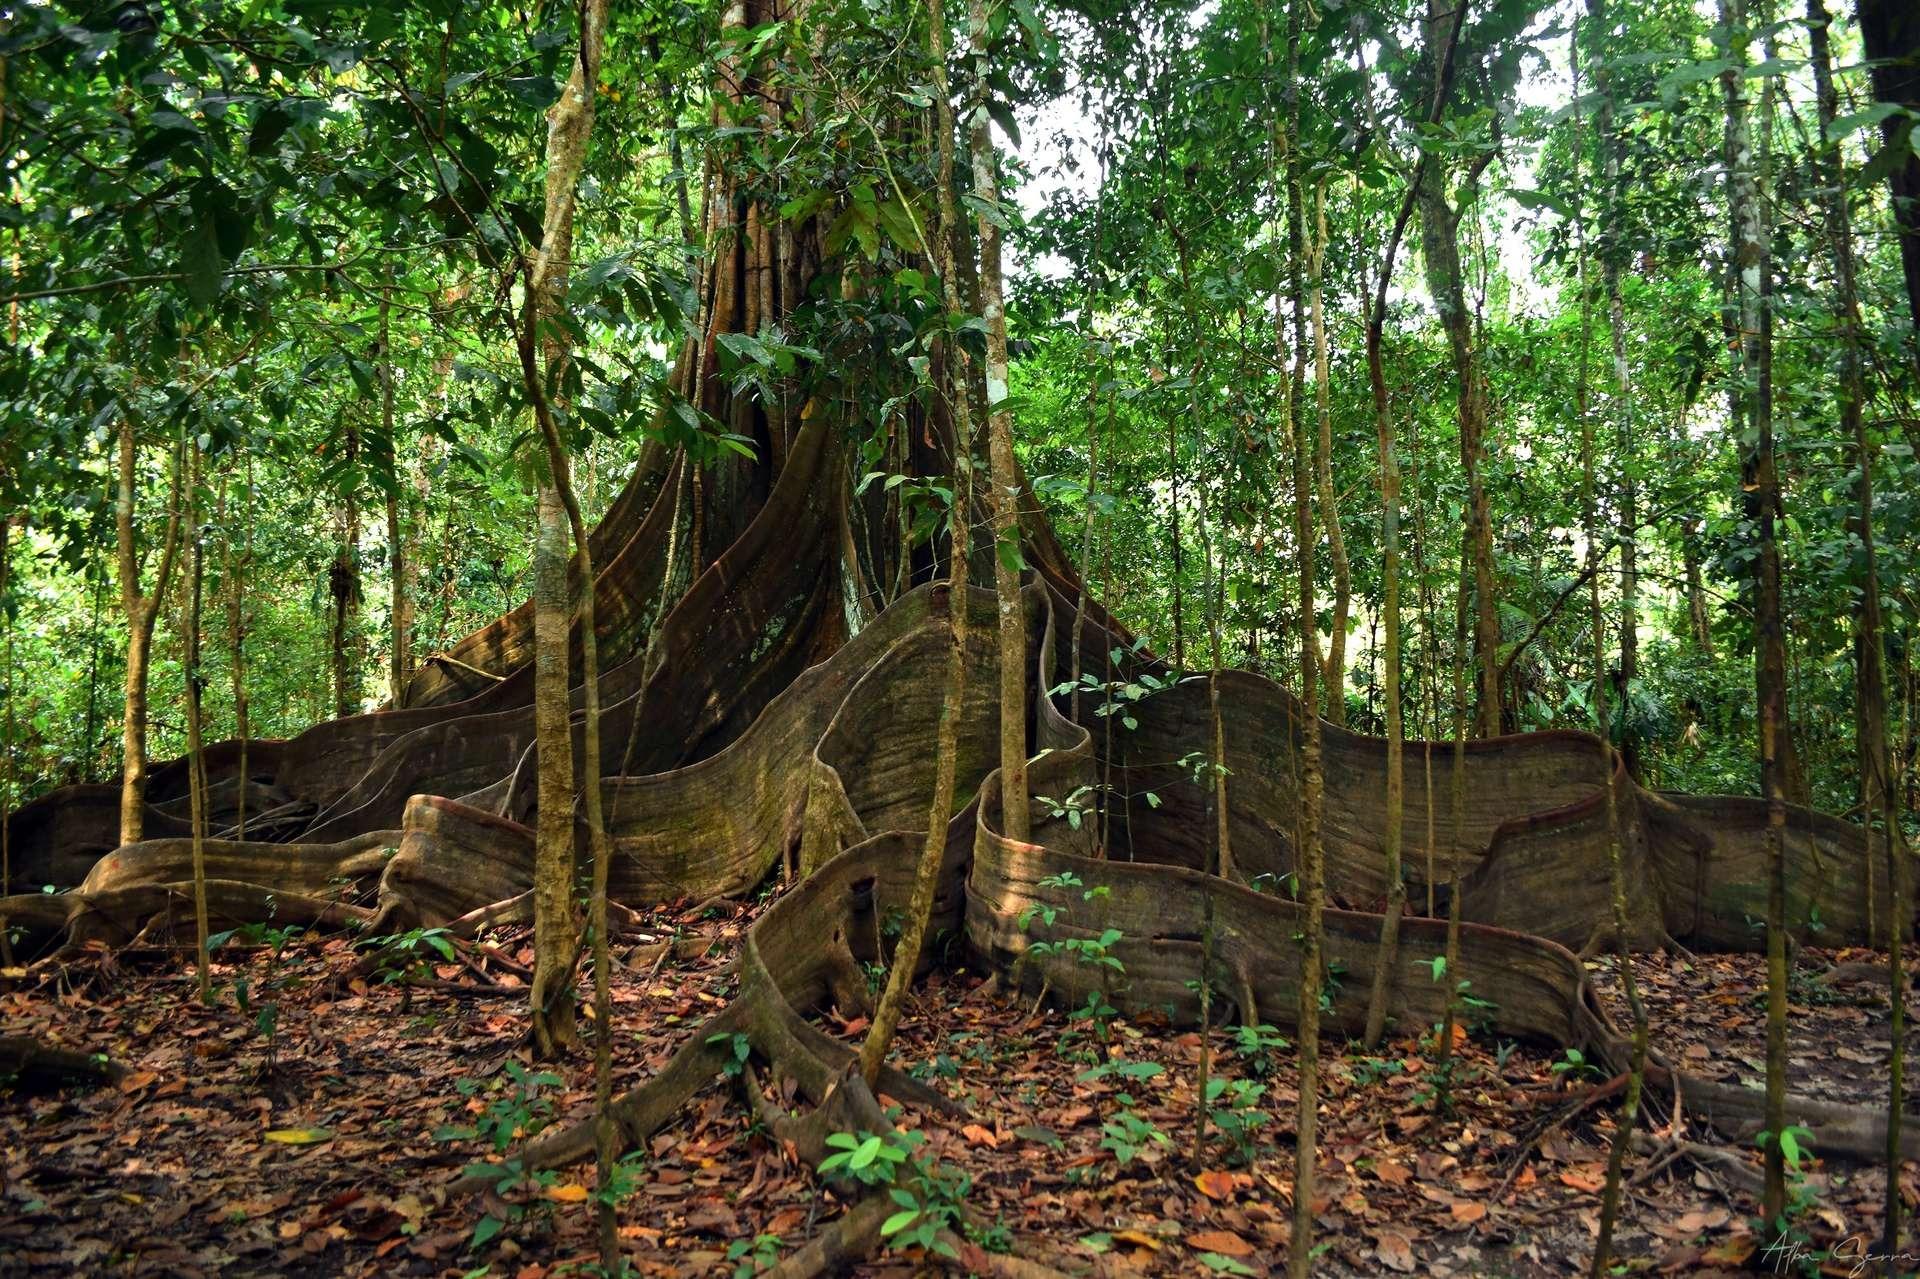 arbre terre amazonie - " Terra Preta " Studie enthüllt außergewöhnliche Kräfte .